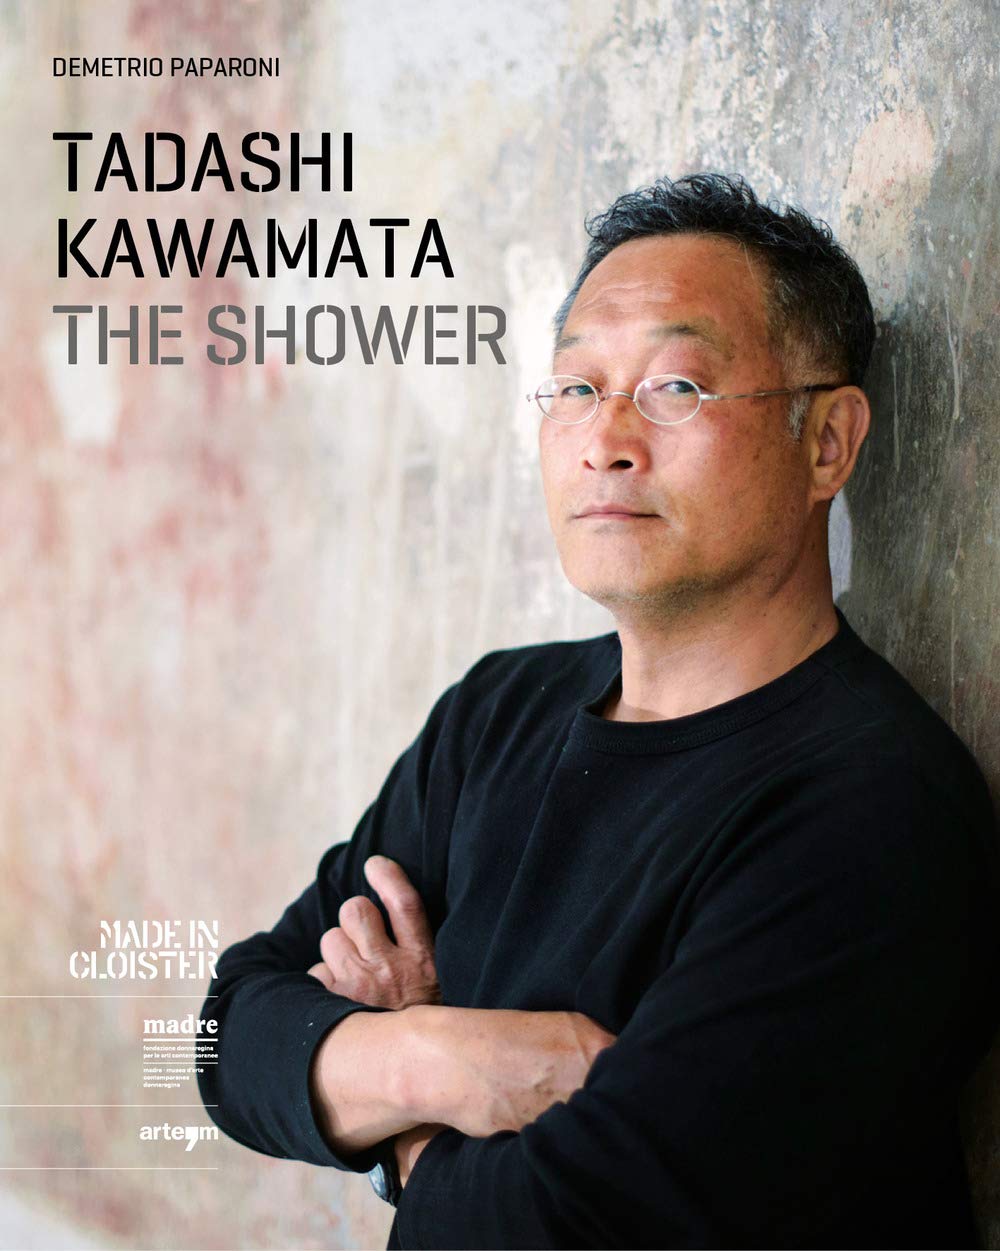 TADASHI KAWAMATA /THE SHOWER / Fondazione Made in Cloister 2017